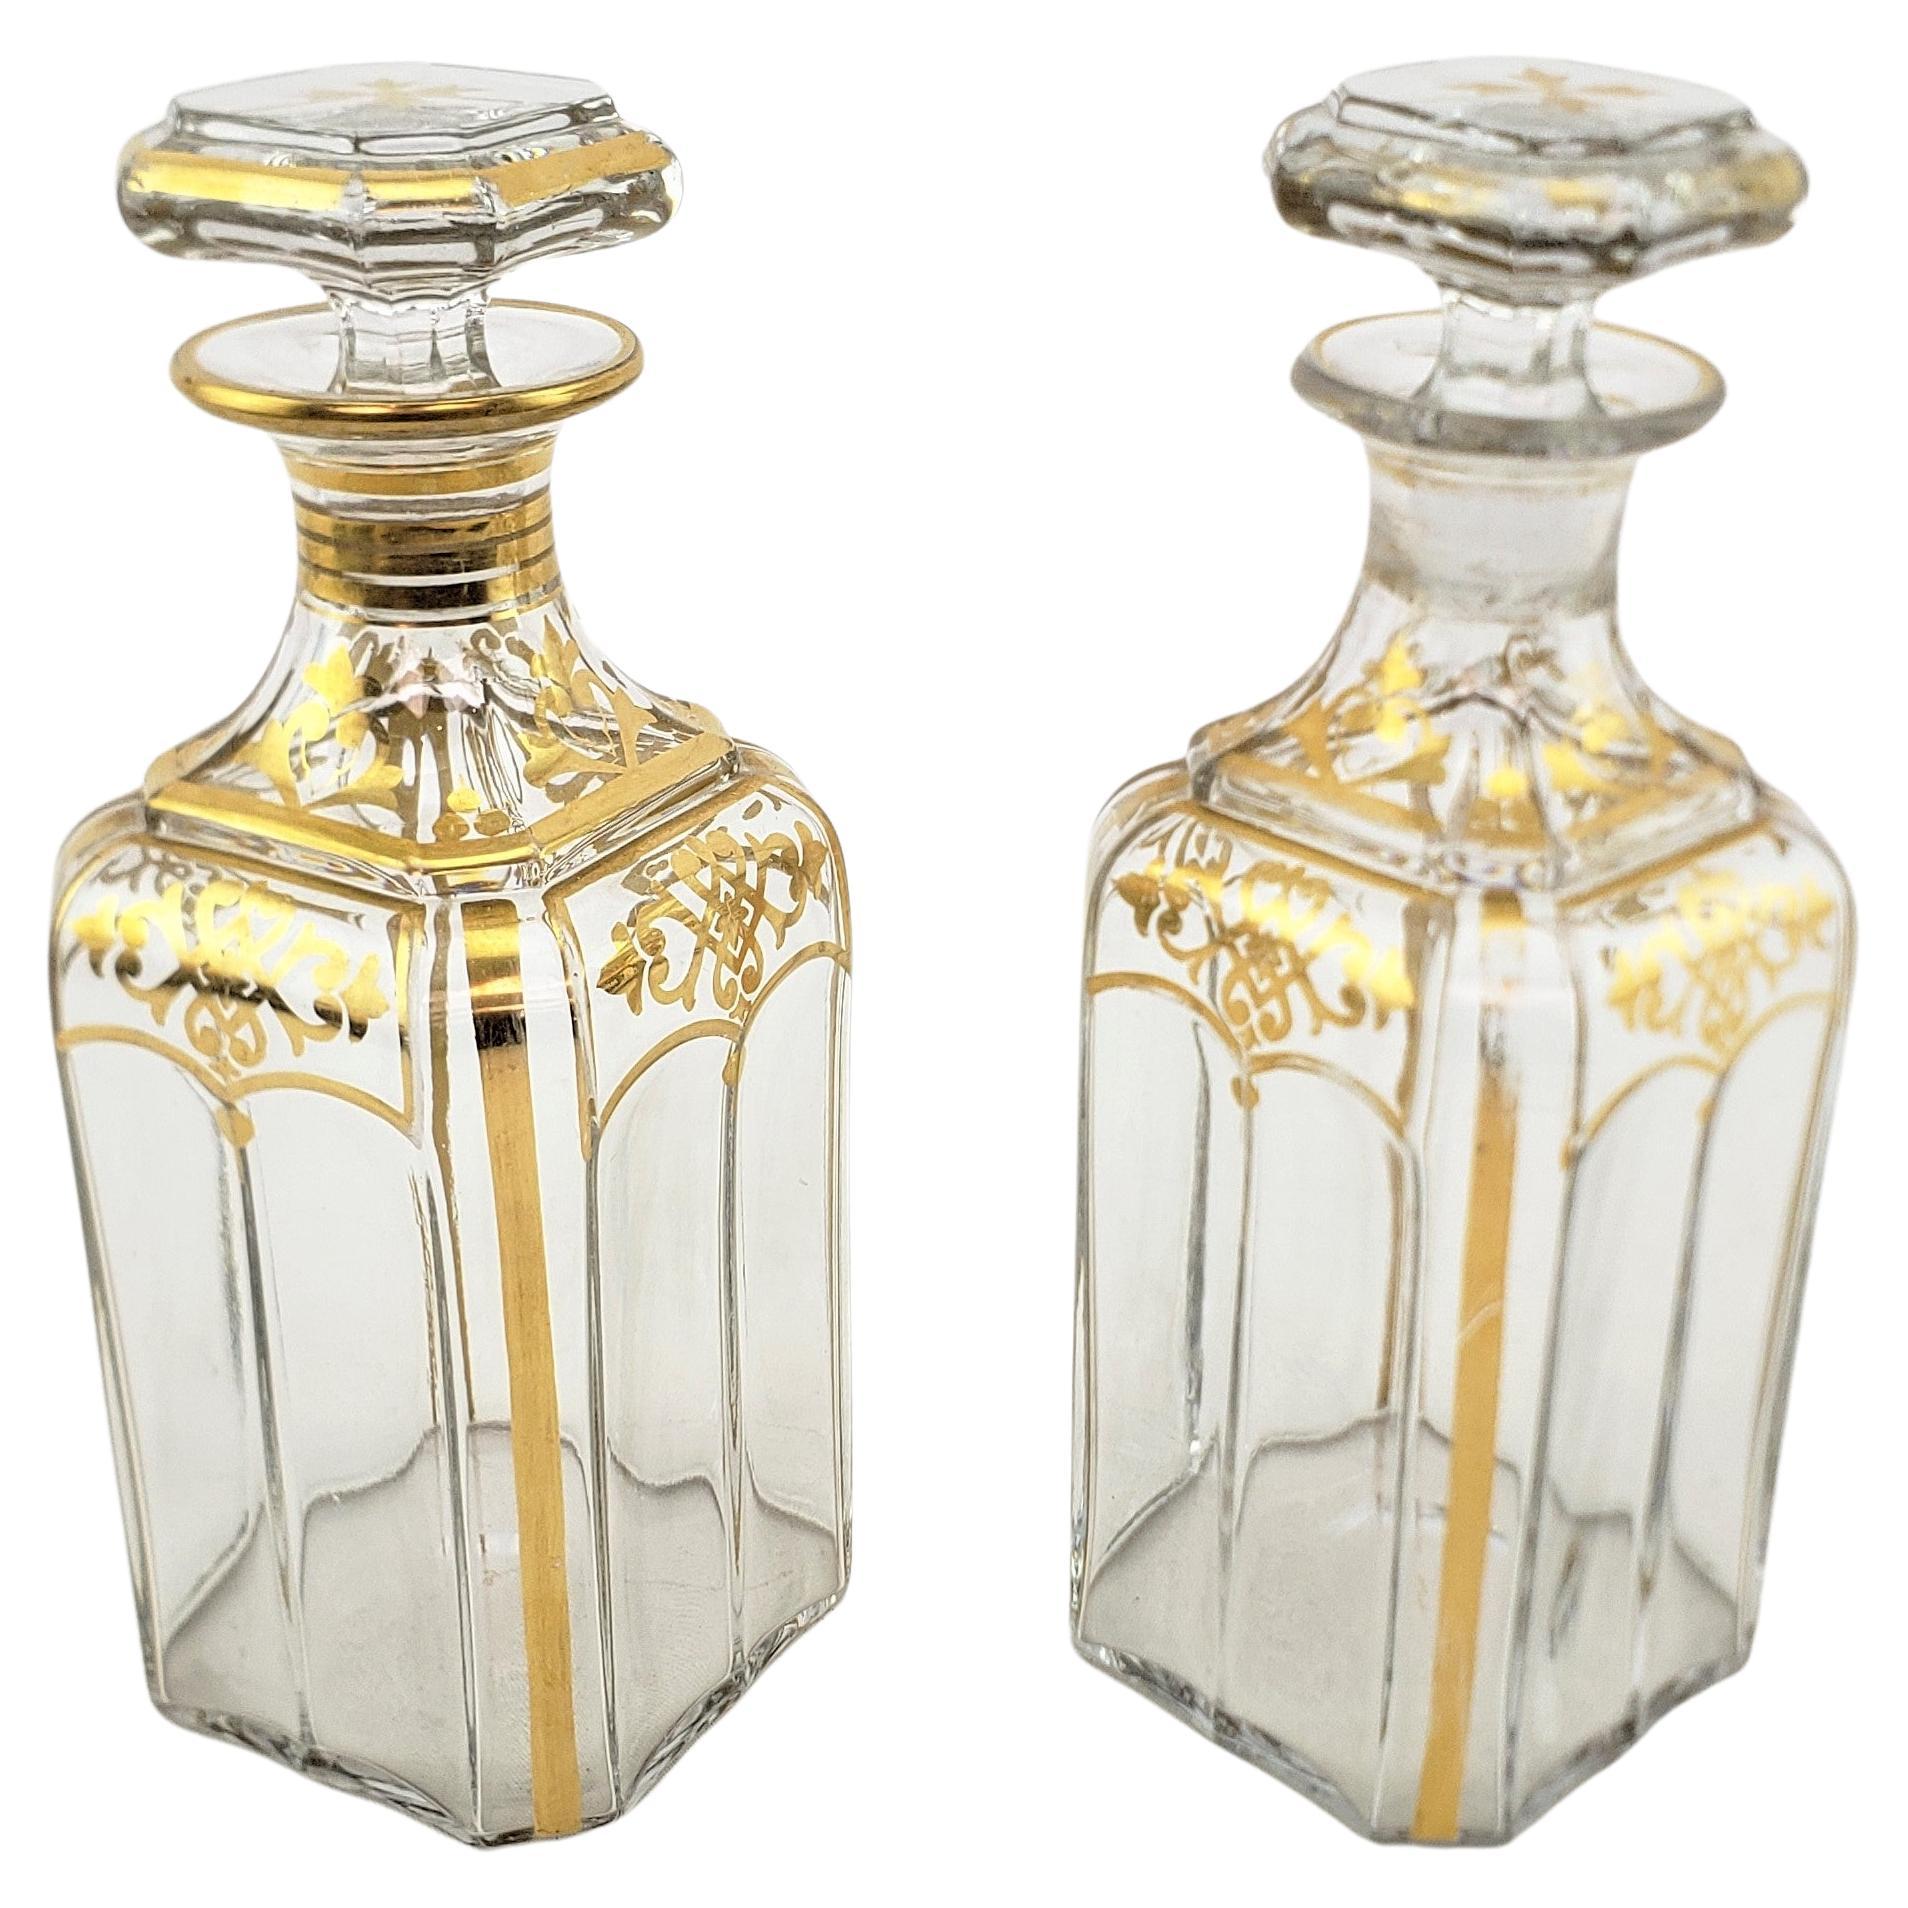 Paire de carafes à bouteille françaises anciennes en cristal transparent avec décoration dorée